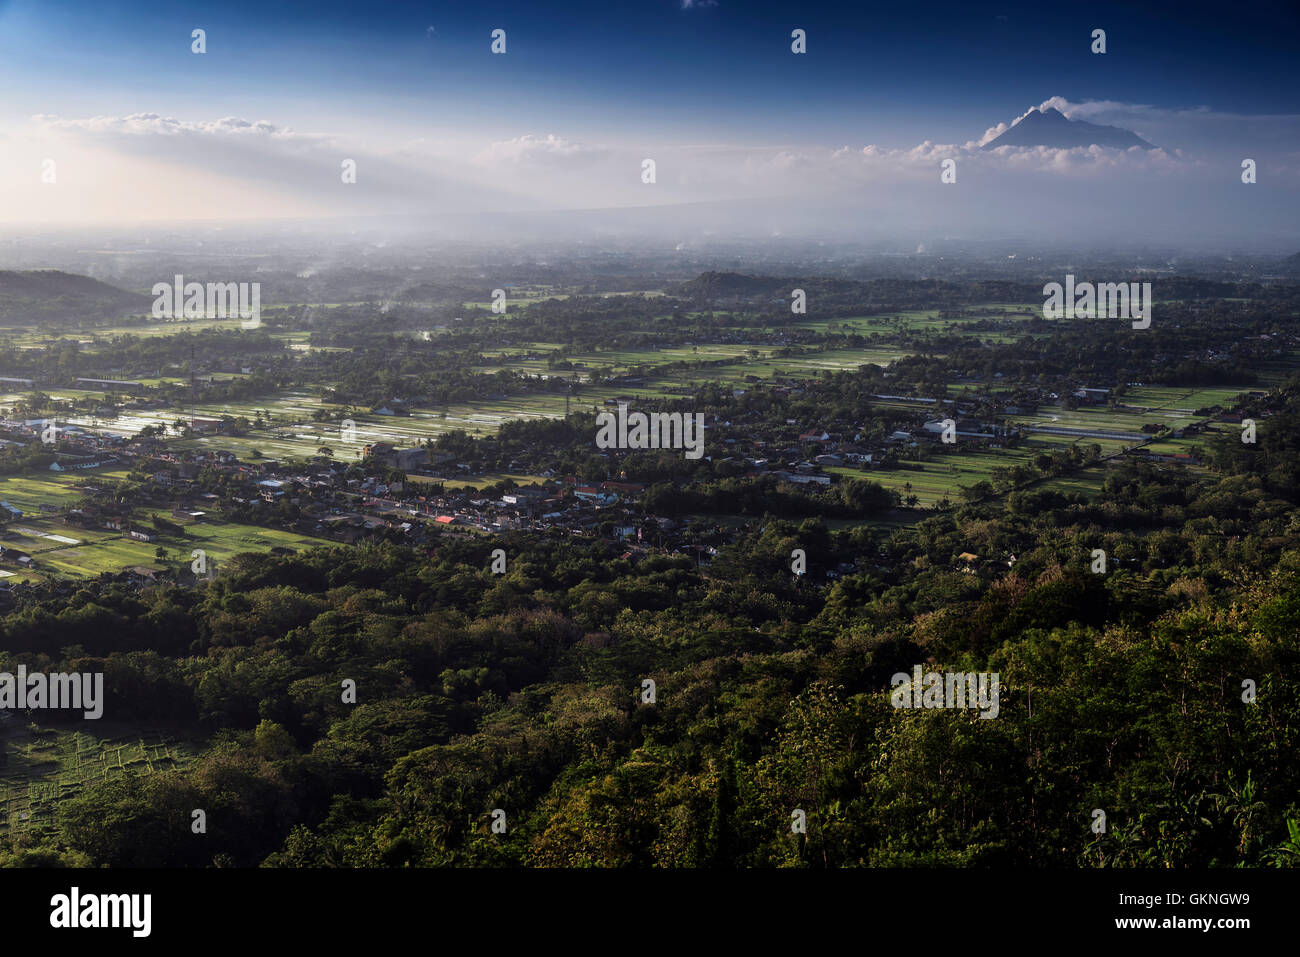 Aerial view of Yogyakarta with Merapi volcano from Bukit Bintang, Jawa, Indonesia Stock Photo